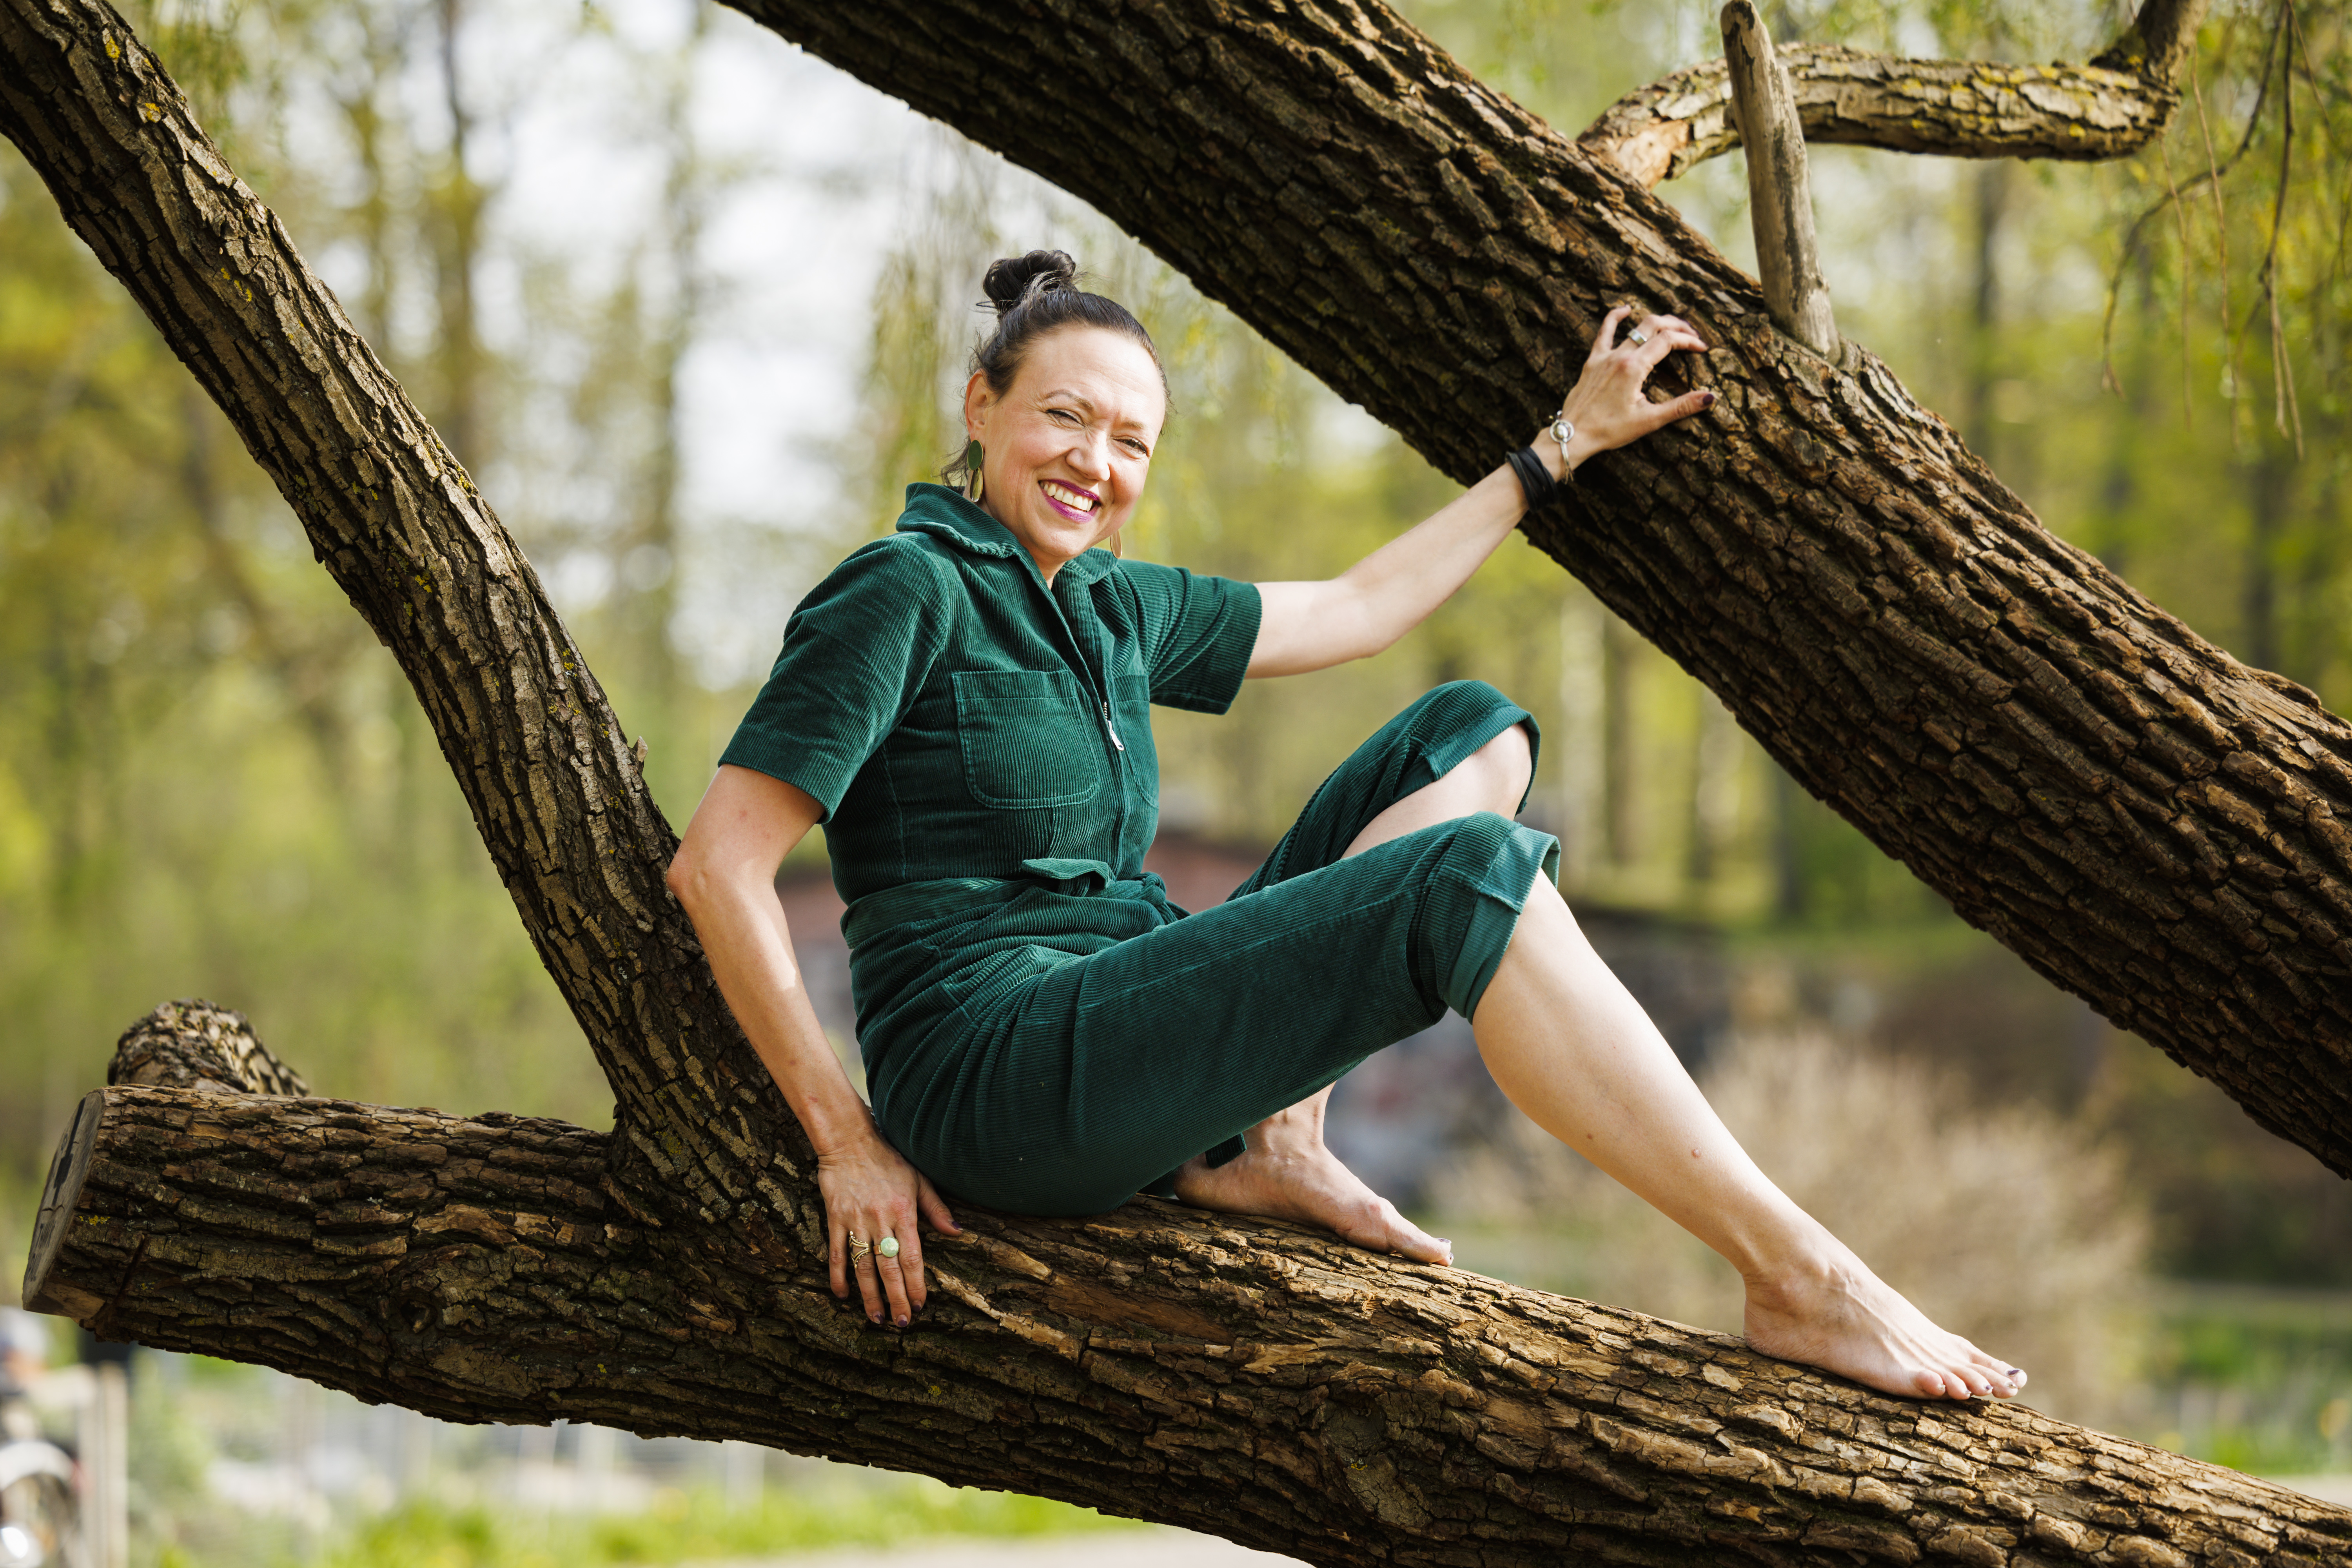 Käsikirjoittaja-ohjaaja Helena Hyvärinen haastoi sarjassaan metsäkoneenkuljettajan kiipeämään puuhun. Nyt oli Hyvärisen vuoro katsoa puita uudesta näkökulmasta. (Kuvaaja: Seppo Samuli)